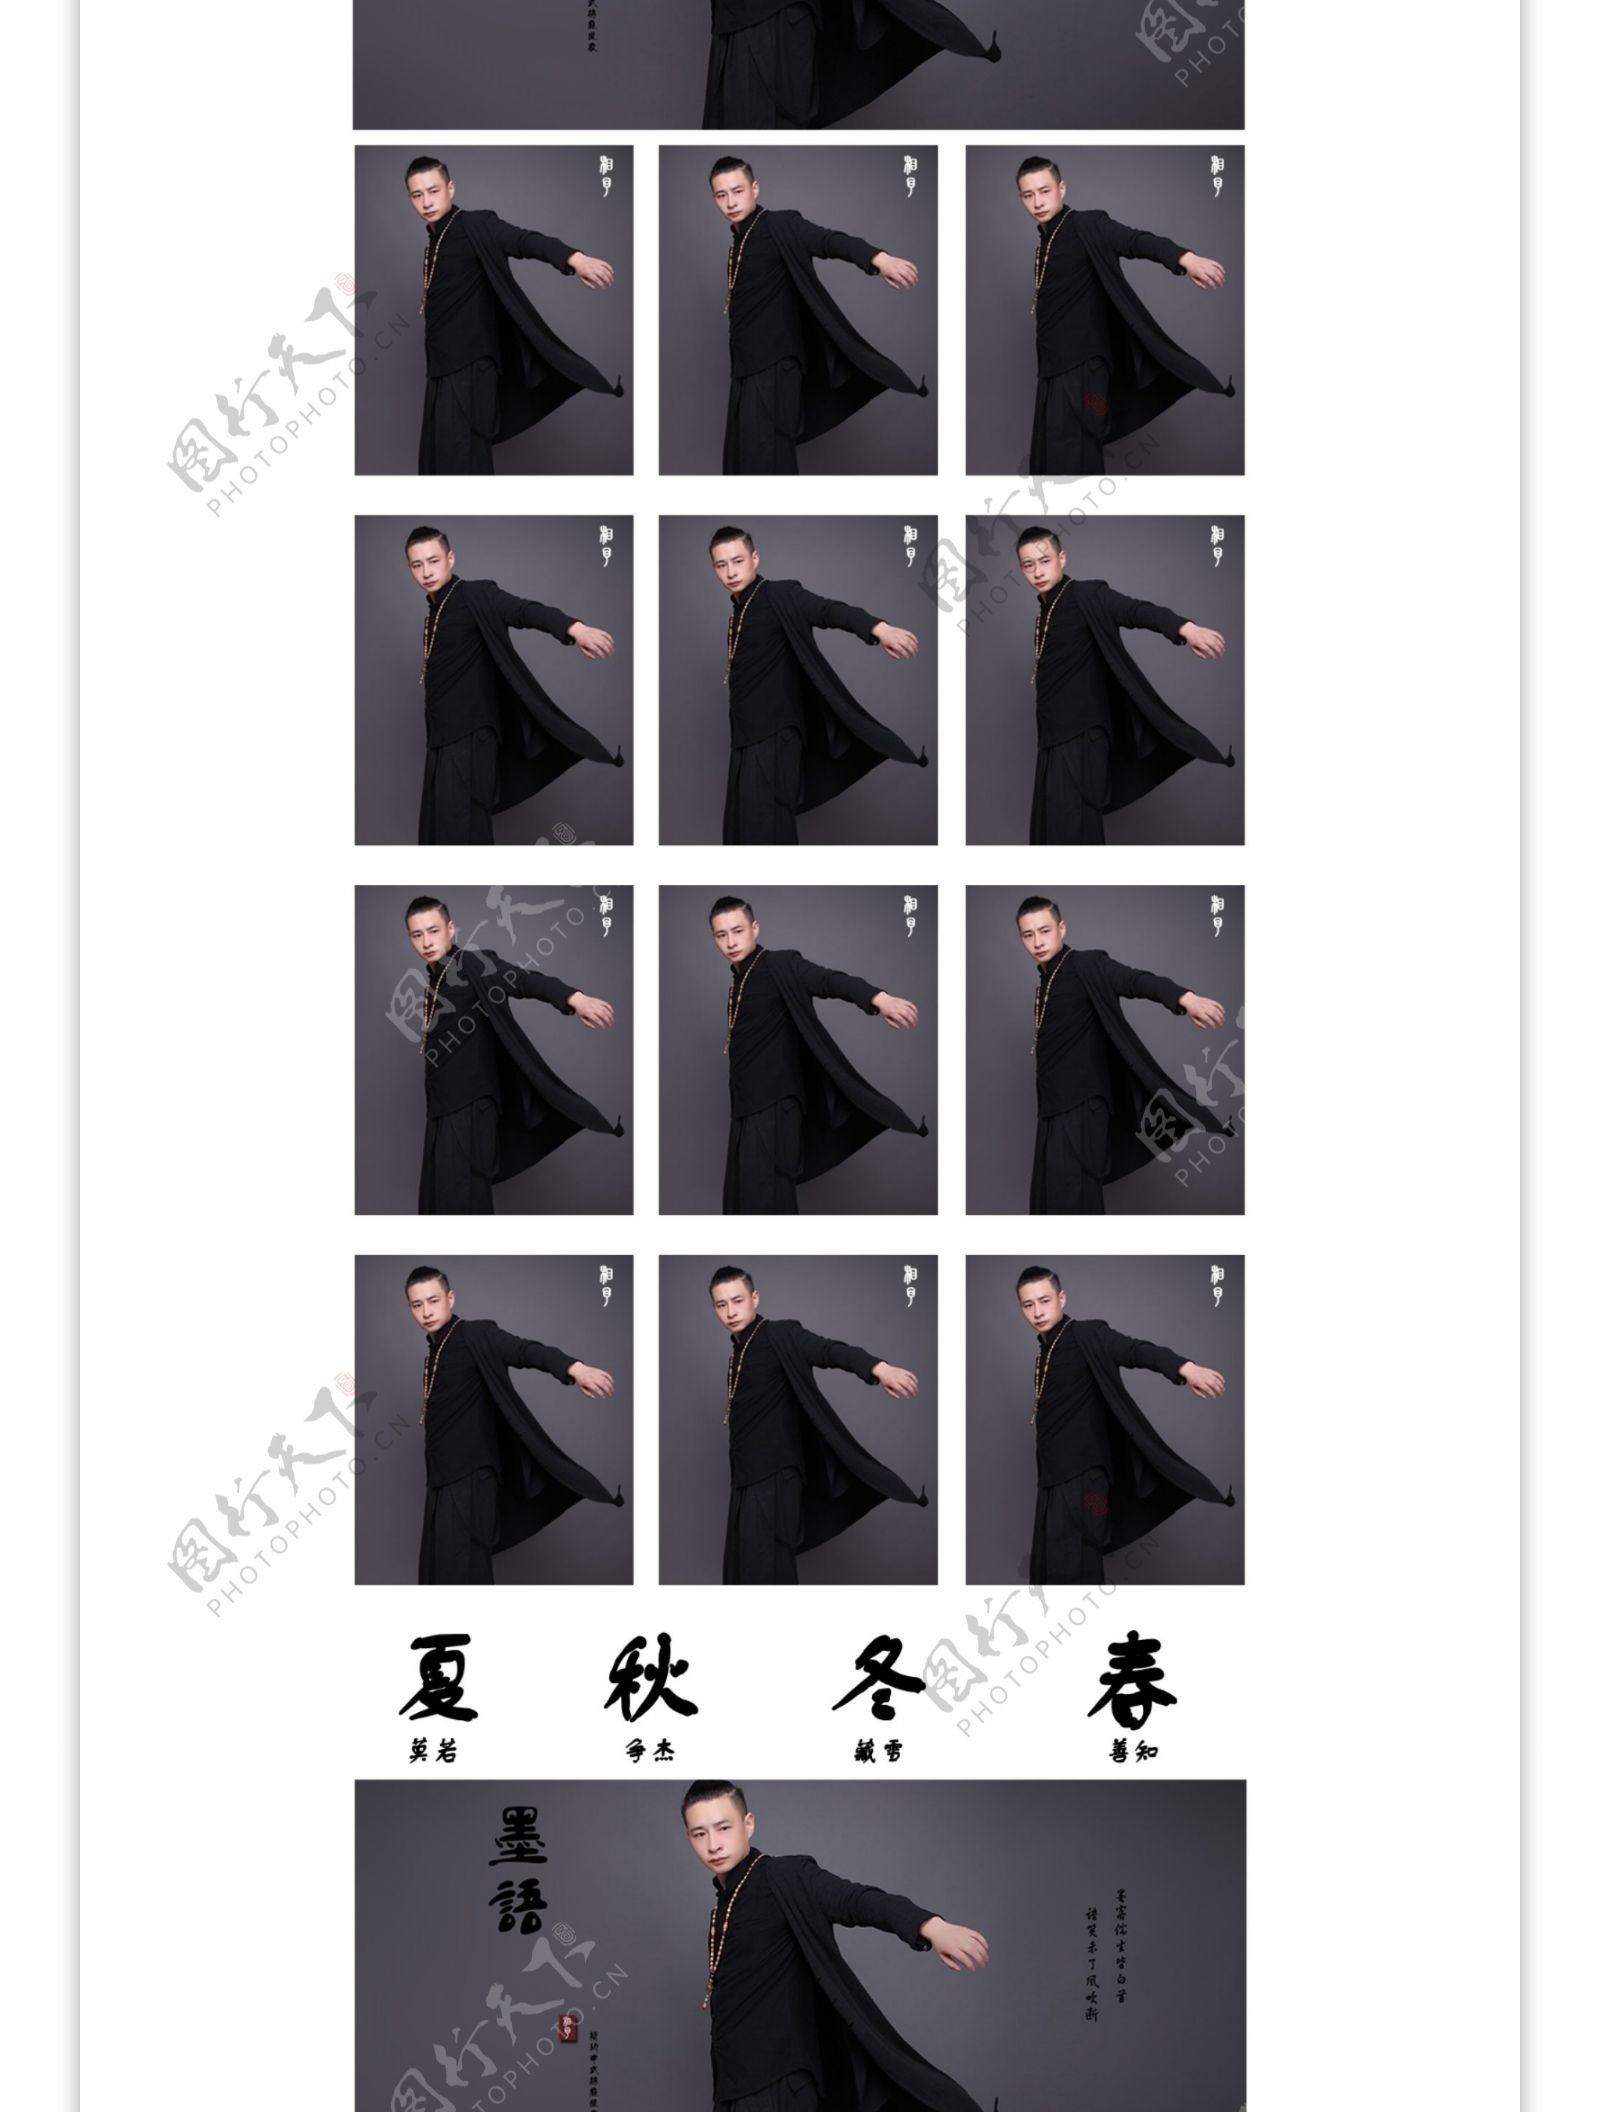 中国风男装简单排版